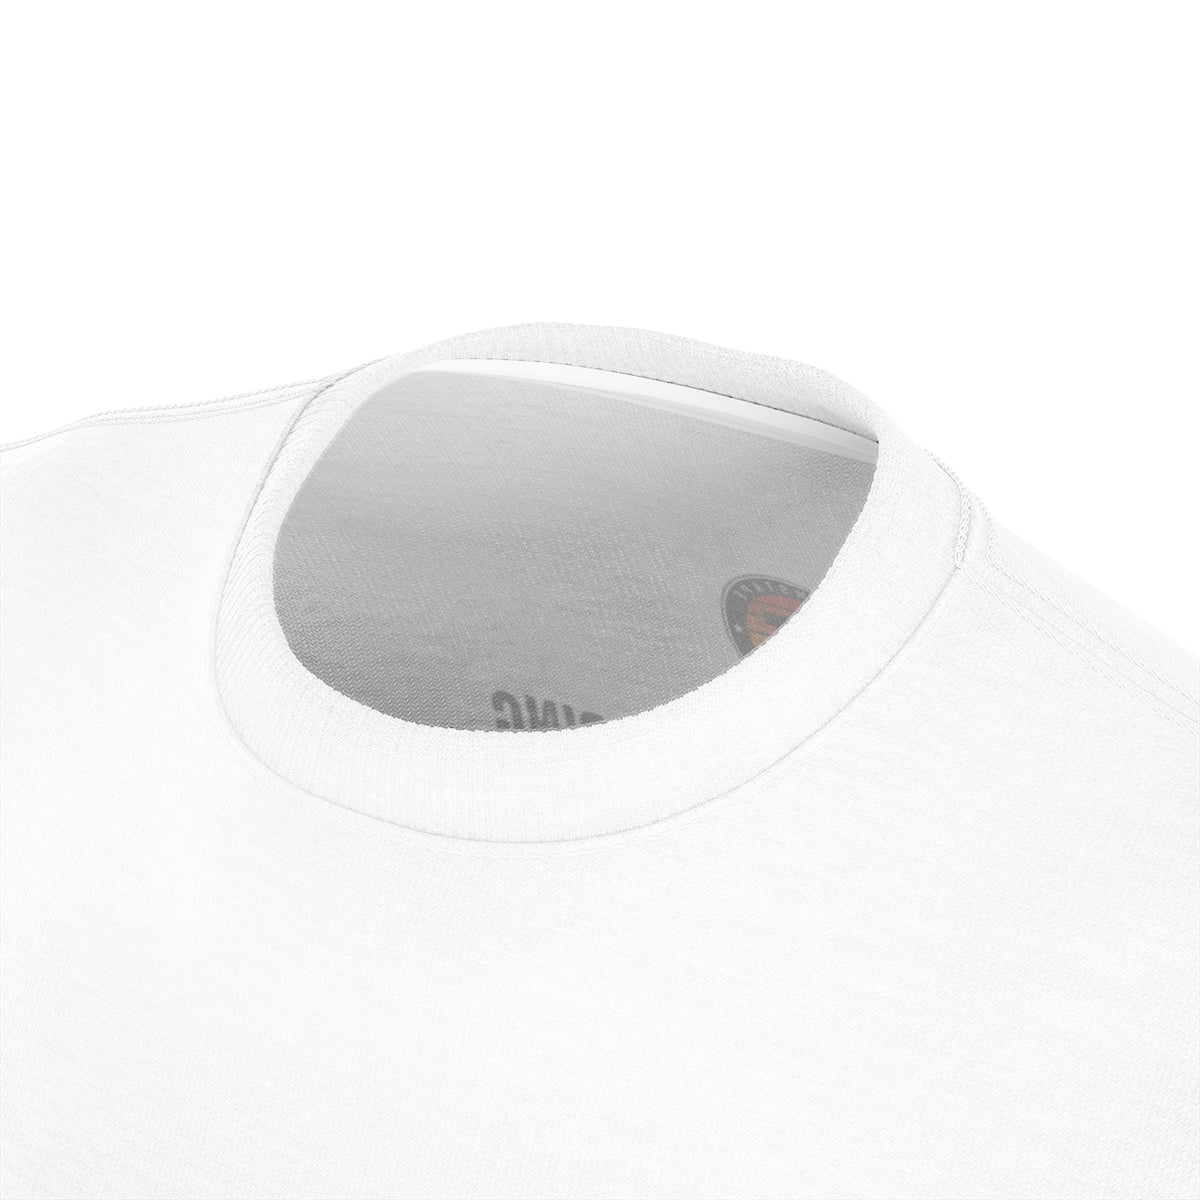 Brust-Taping-T-Shirt normalisieren | Hautton 003 – 1 Streifen 